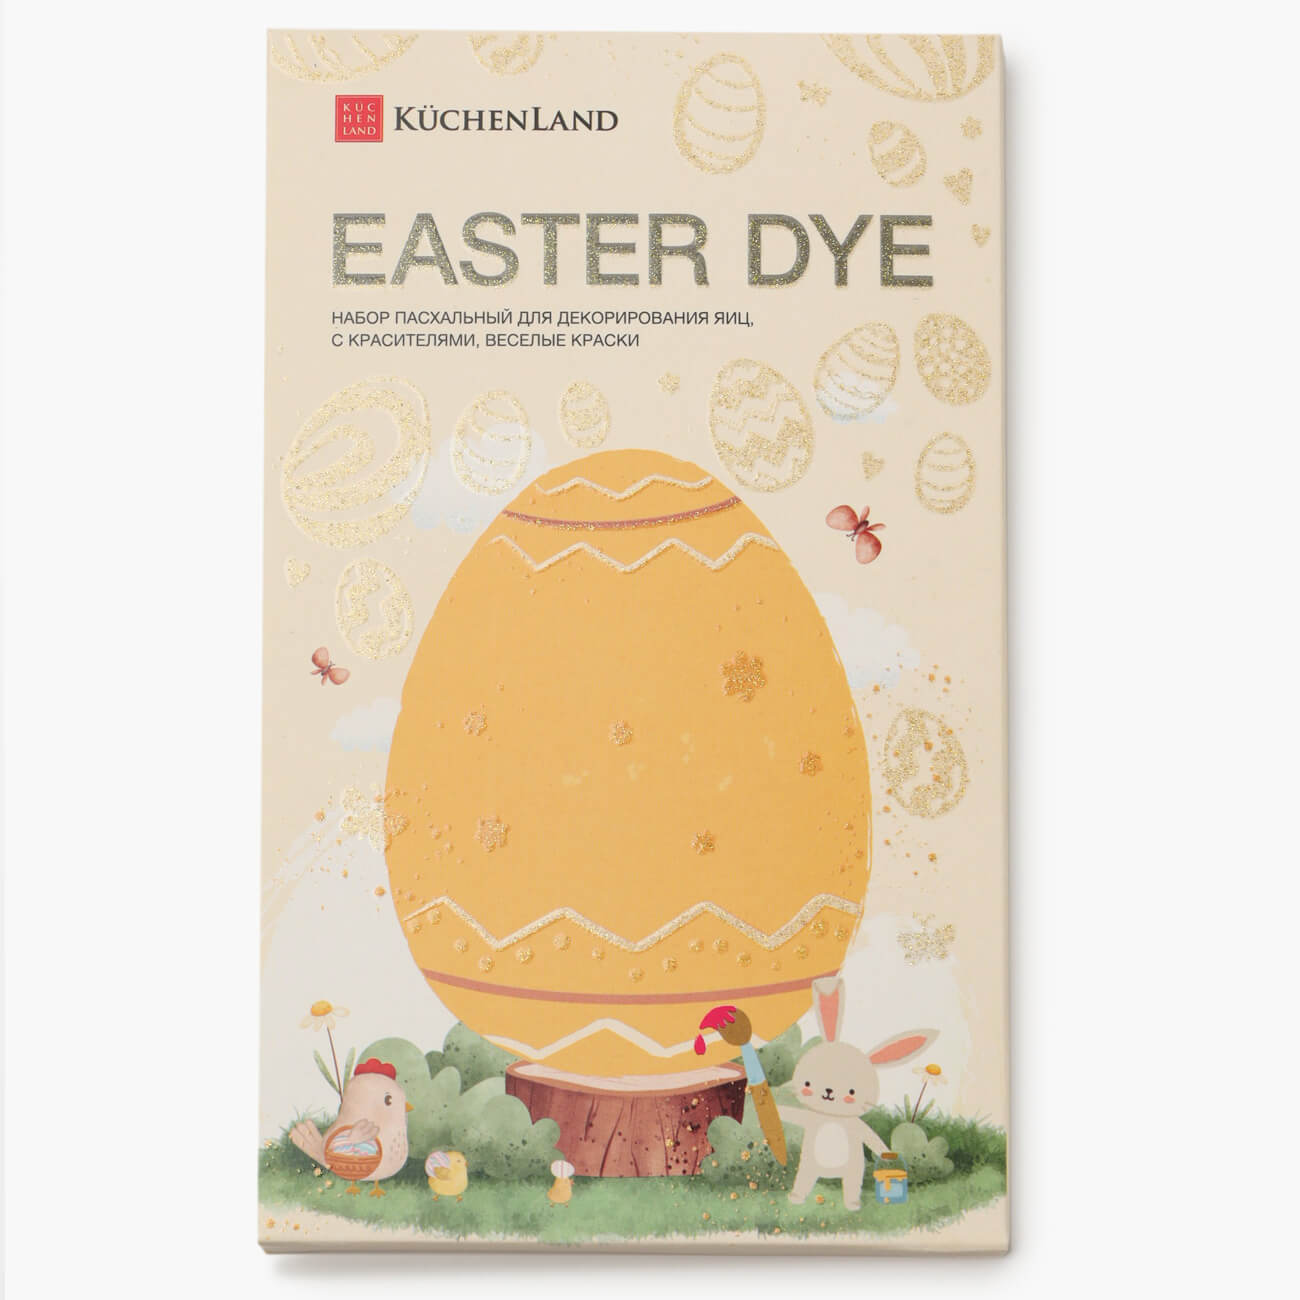 Набор пасхальный для декорирования яиц, 7 цветов/13 пр, Веселые краски, Easter dye набор пасхальный для декорирования яиц 7 ов 13 пр веселые краски easter dye